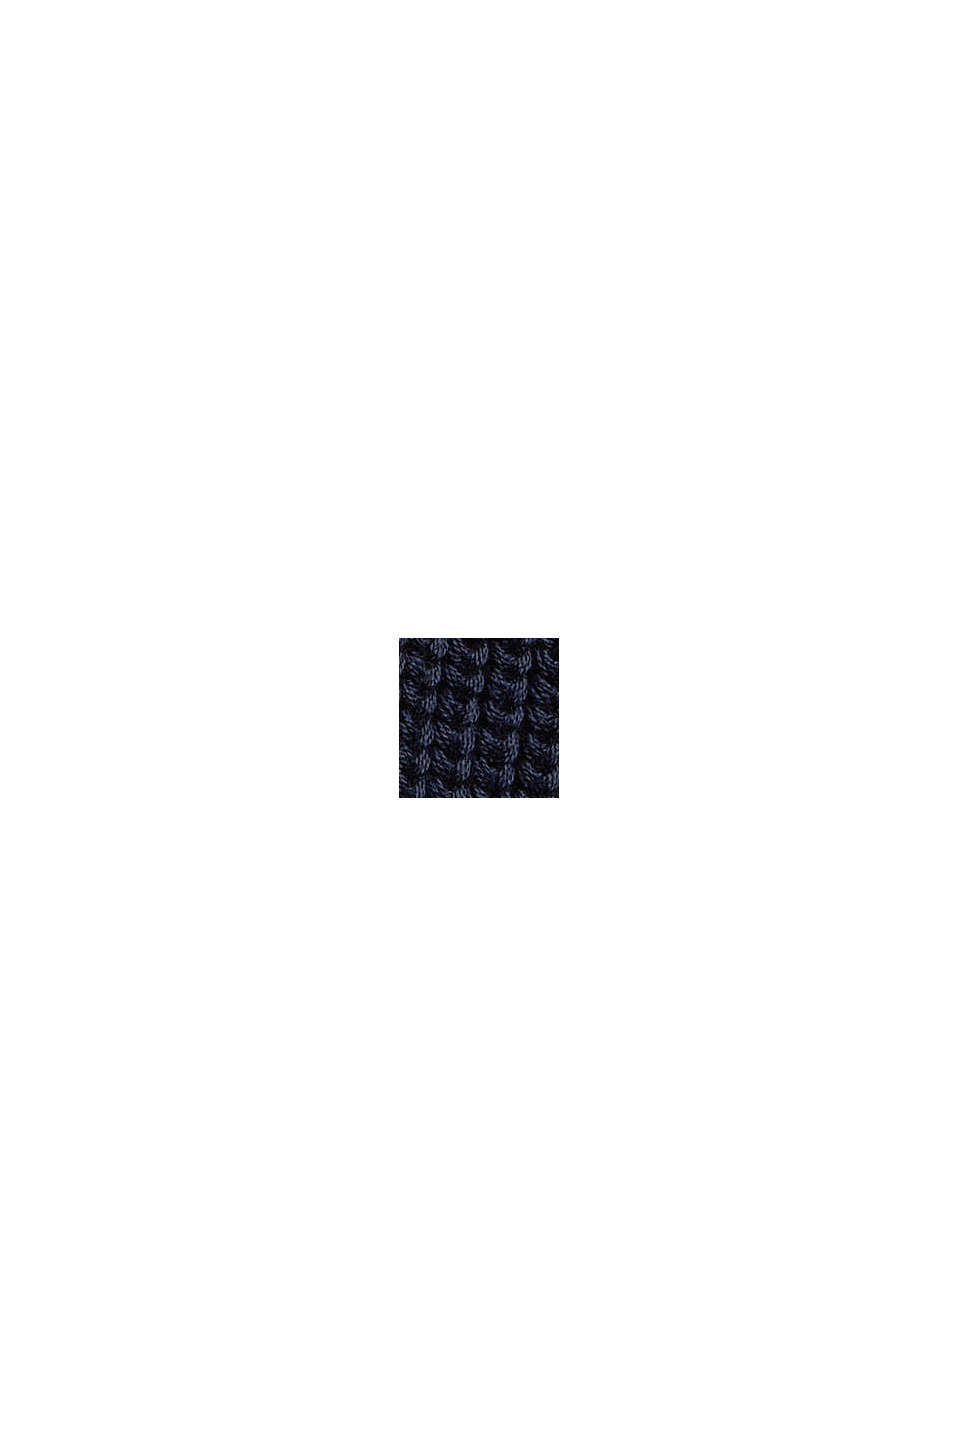 Jersey de punto con diseño, en algodón ecológico, NAVY, swatch